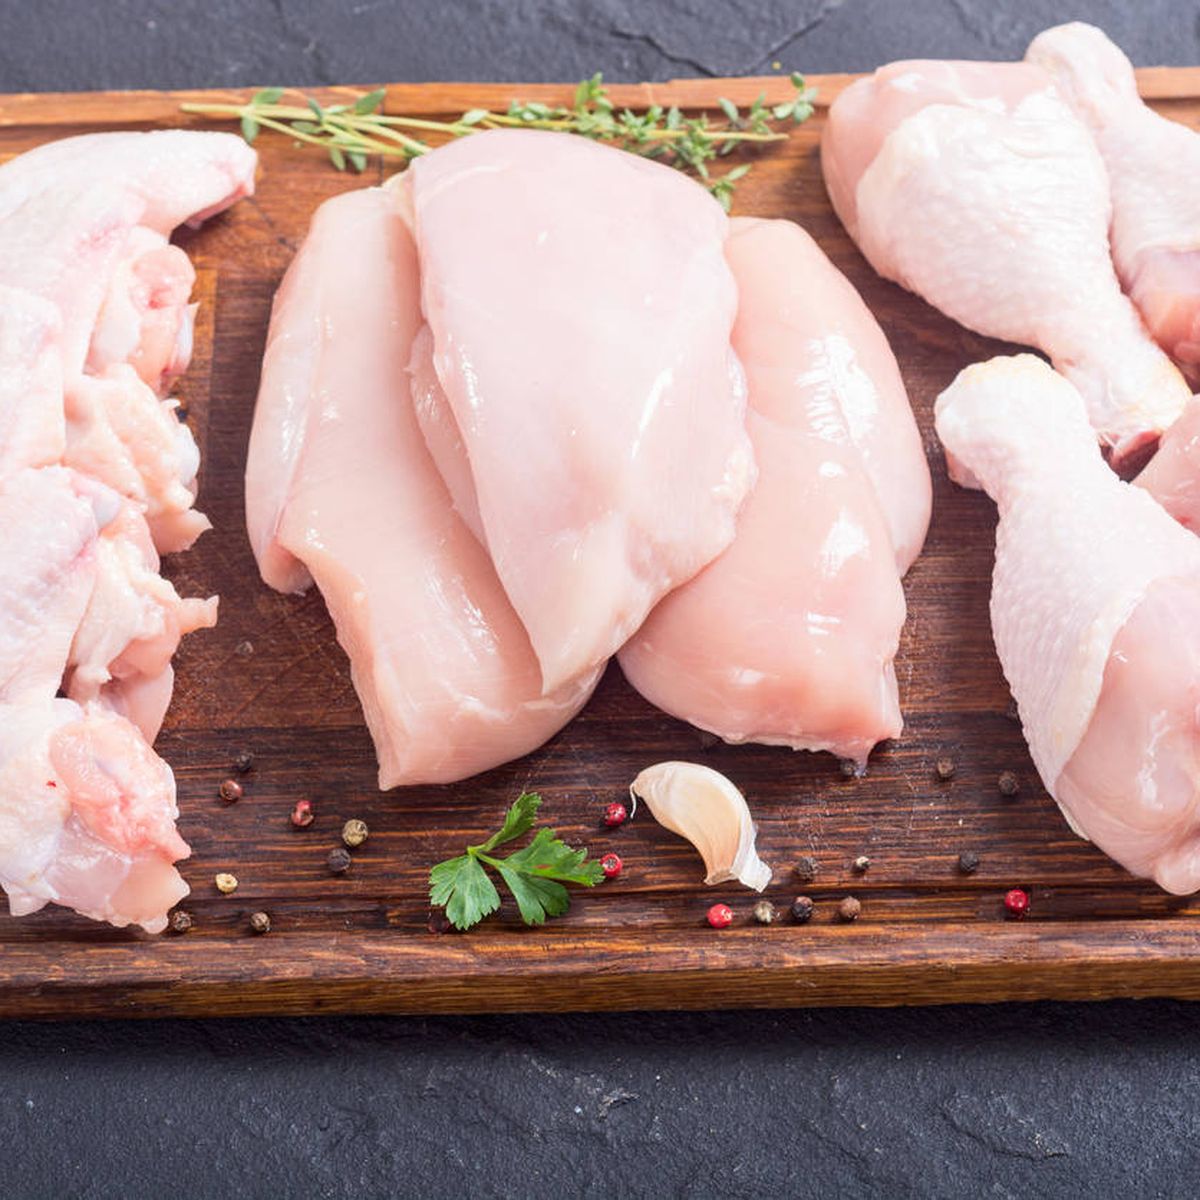 Conoce los cortes del pollo y cómo sacarles el máximo partido culinario